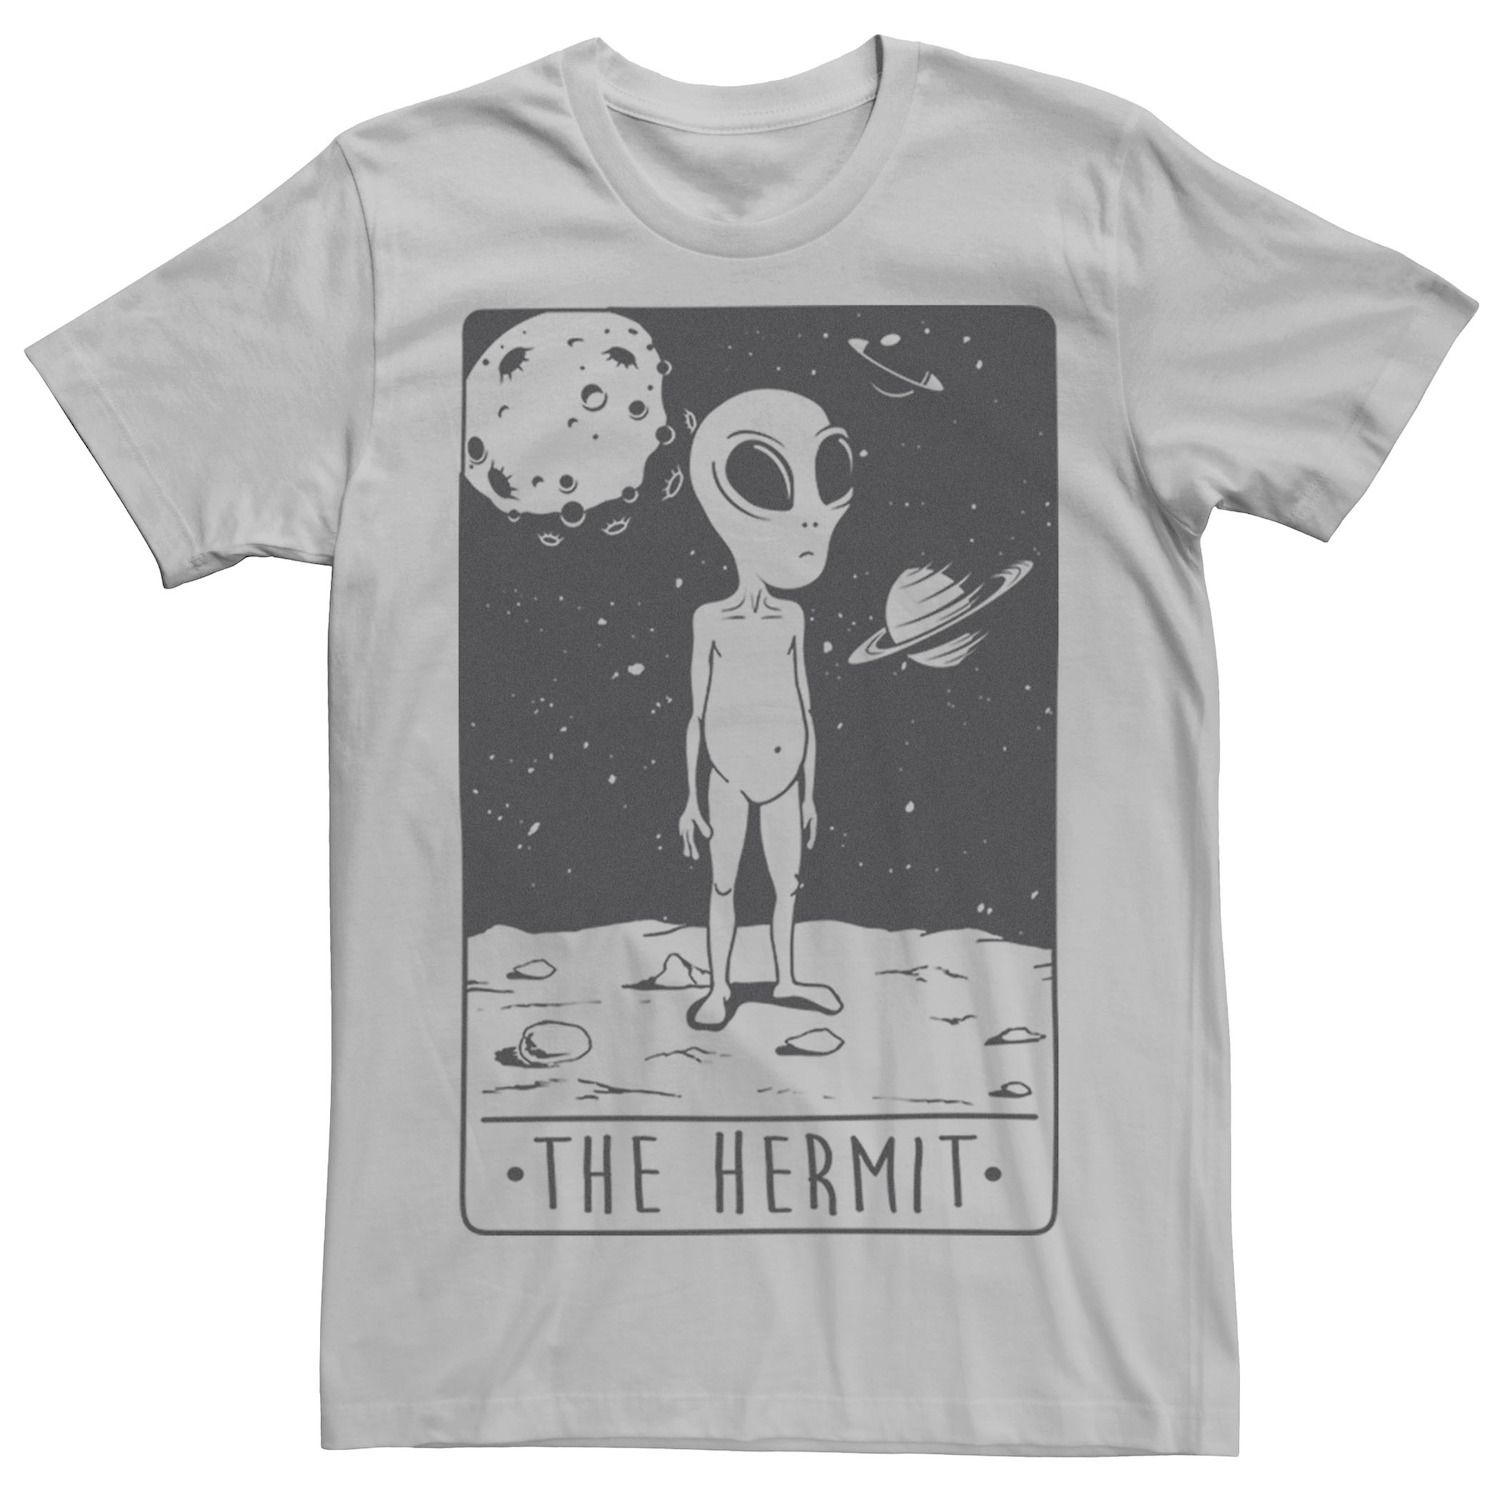 Мужская футболка Space Hermit Licensed Character, серебристый white s hermit